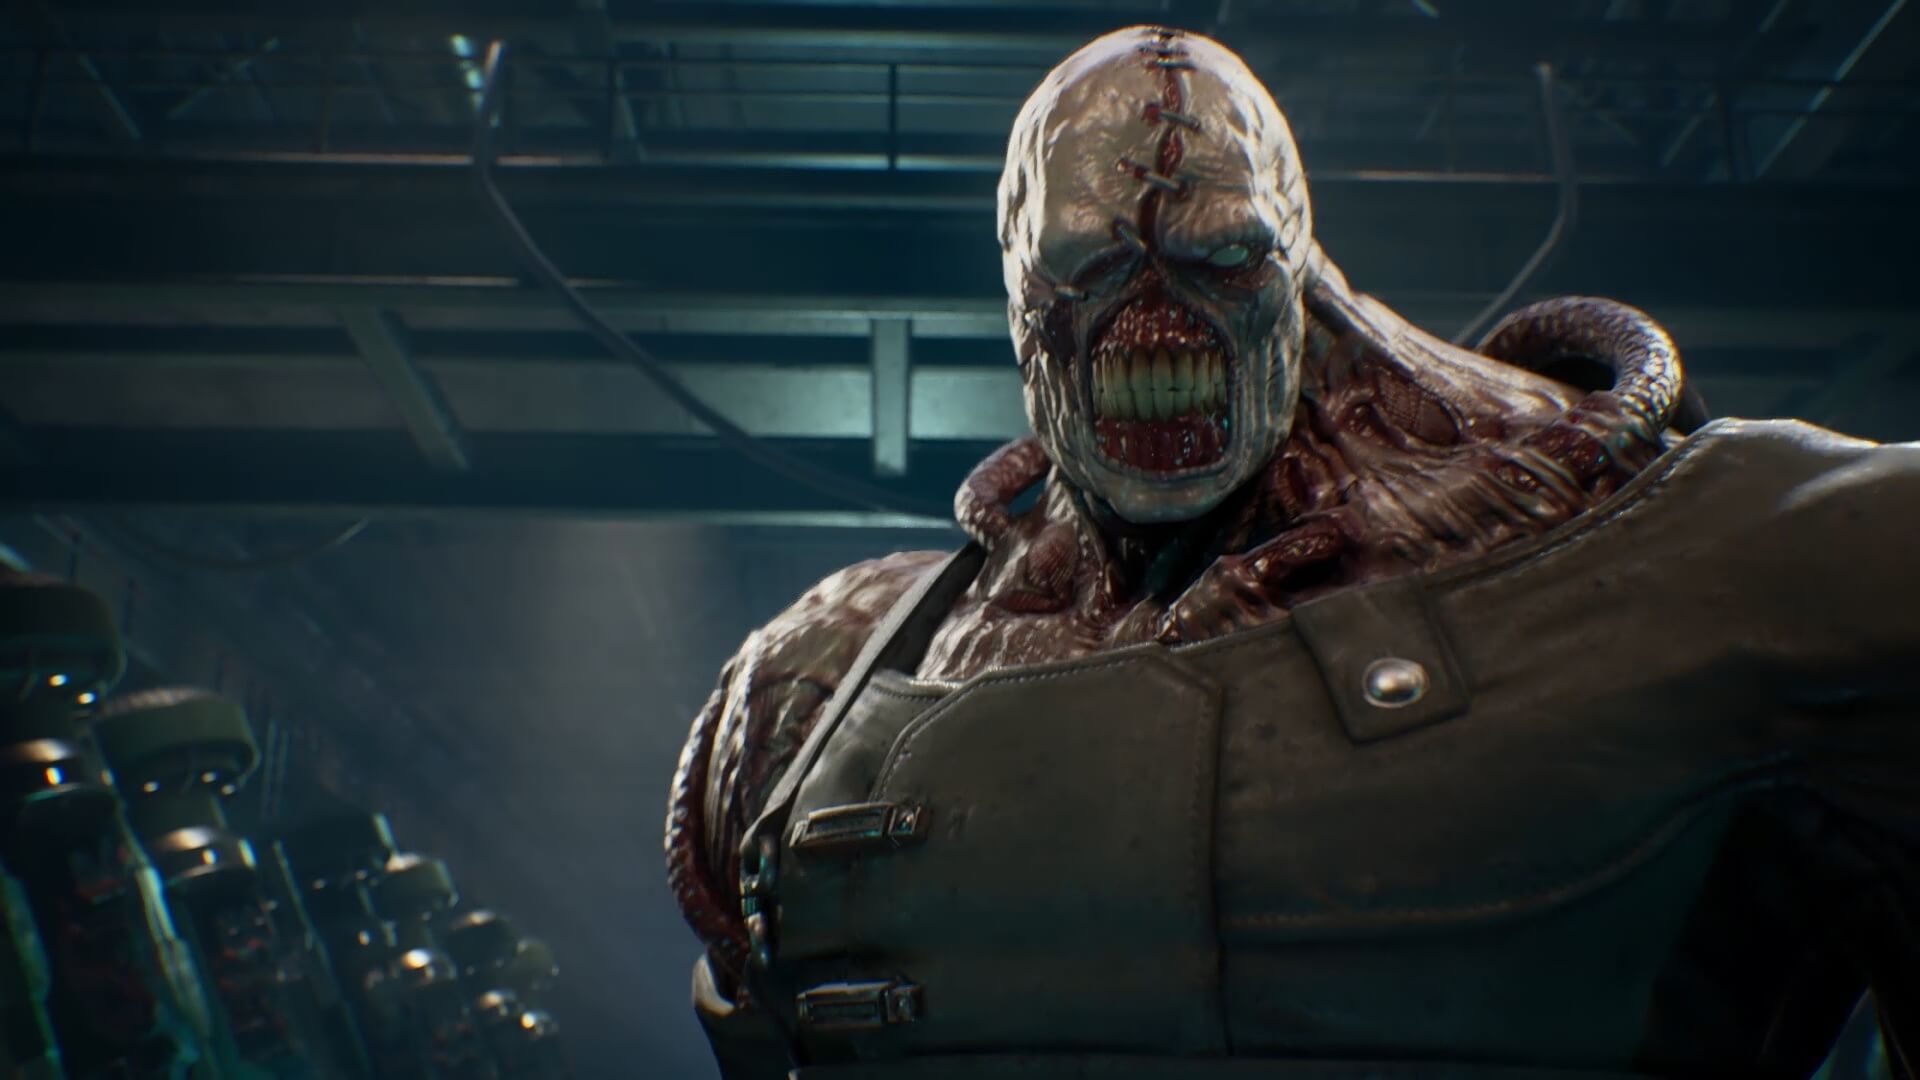 ข่าวลือ! Resident Evil 3: Nemesis Remake อาจเปิดตัวในปี 2020